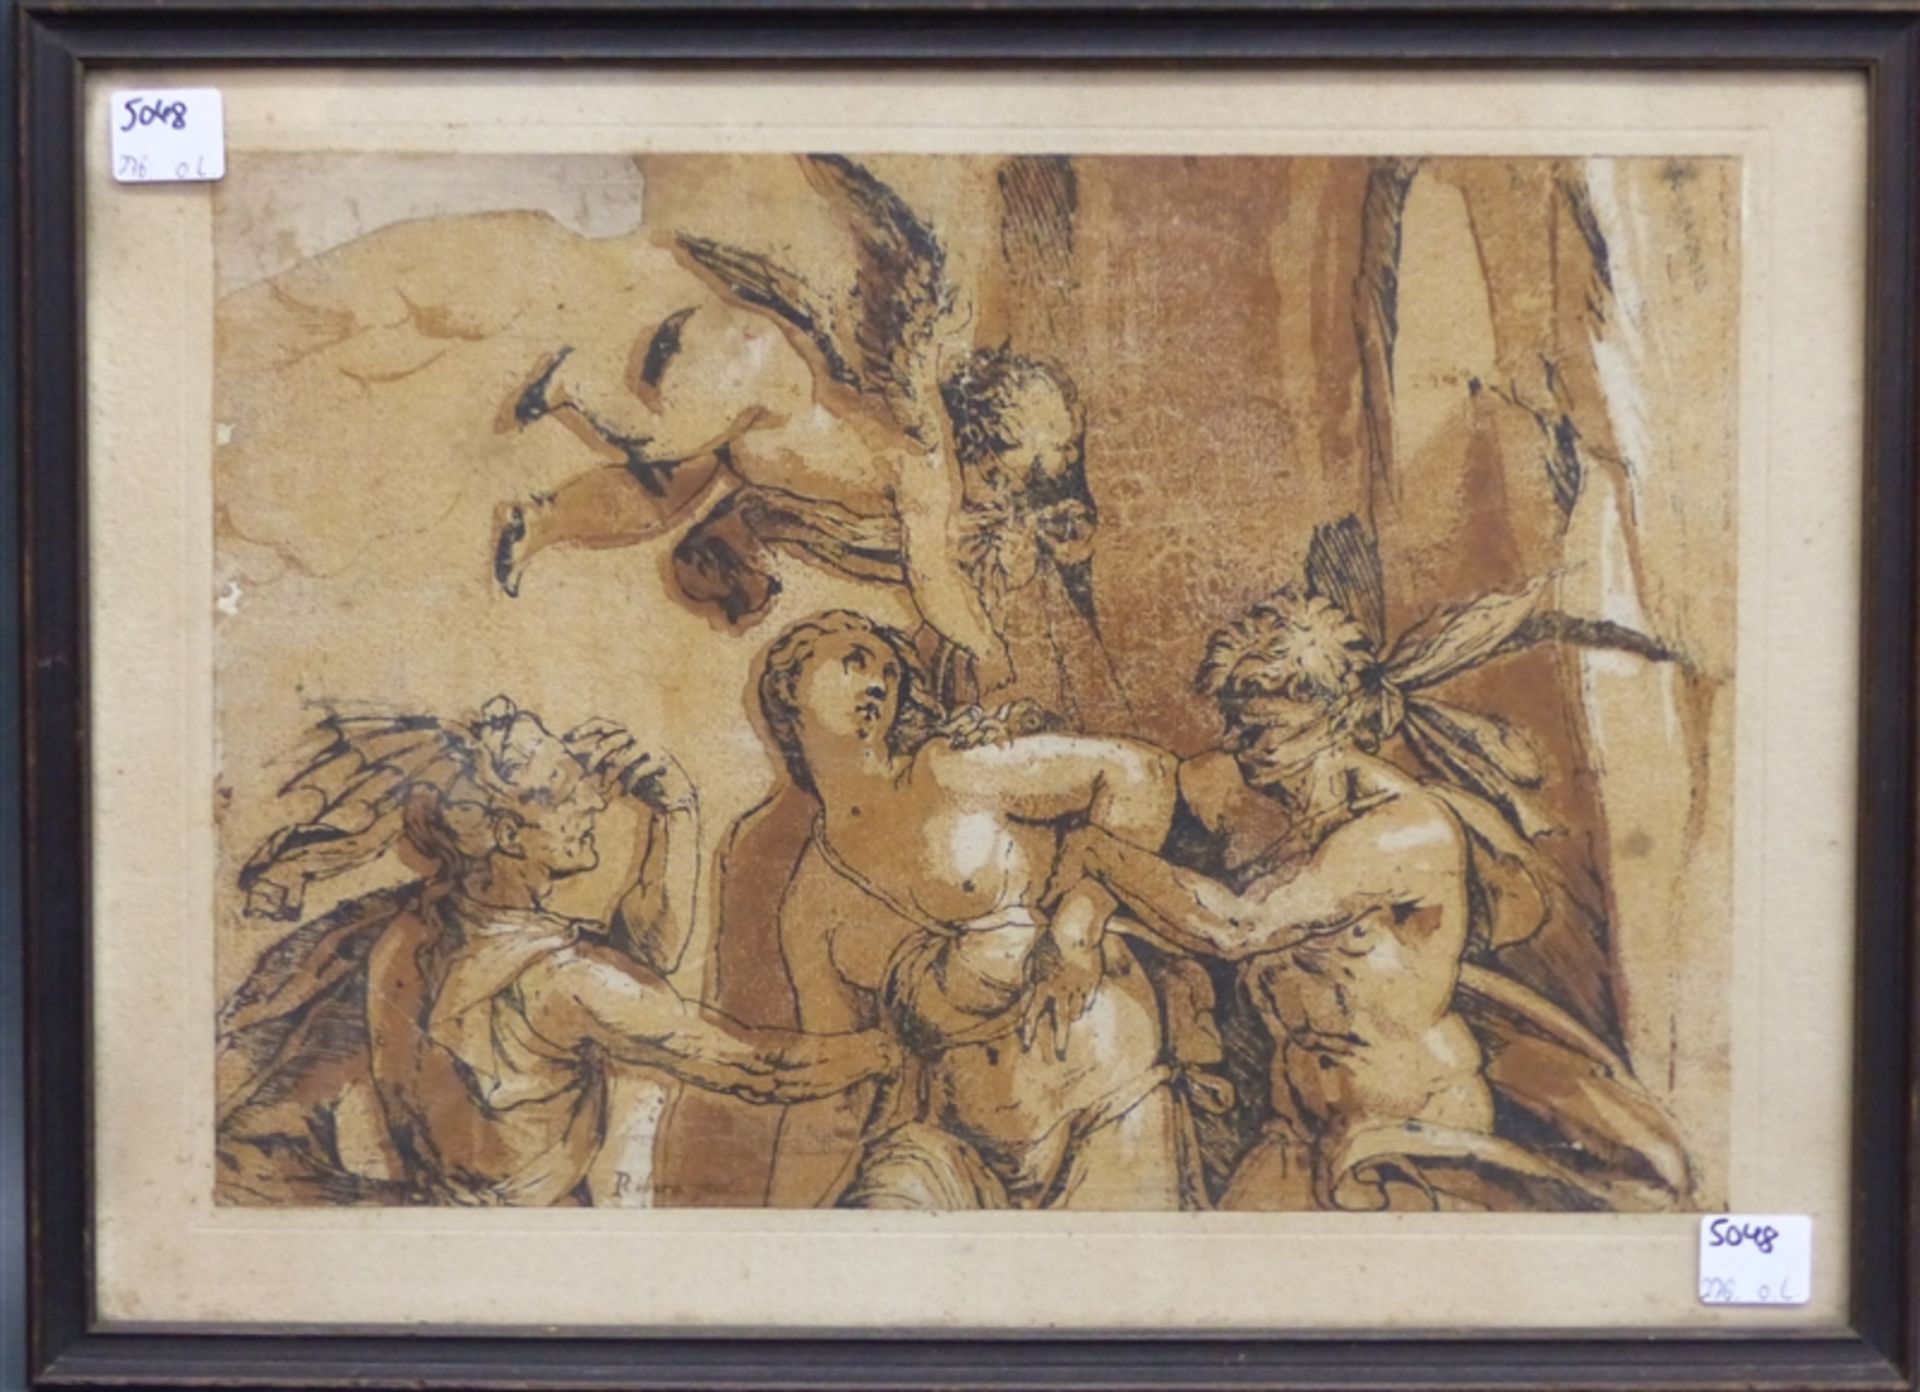 Druckgraphik, 18./19. Jh. Figurengruppe mit Engel, links unten bezeichnet: "Ribera Fecit", 22 x 31